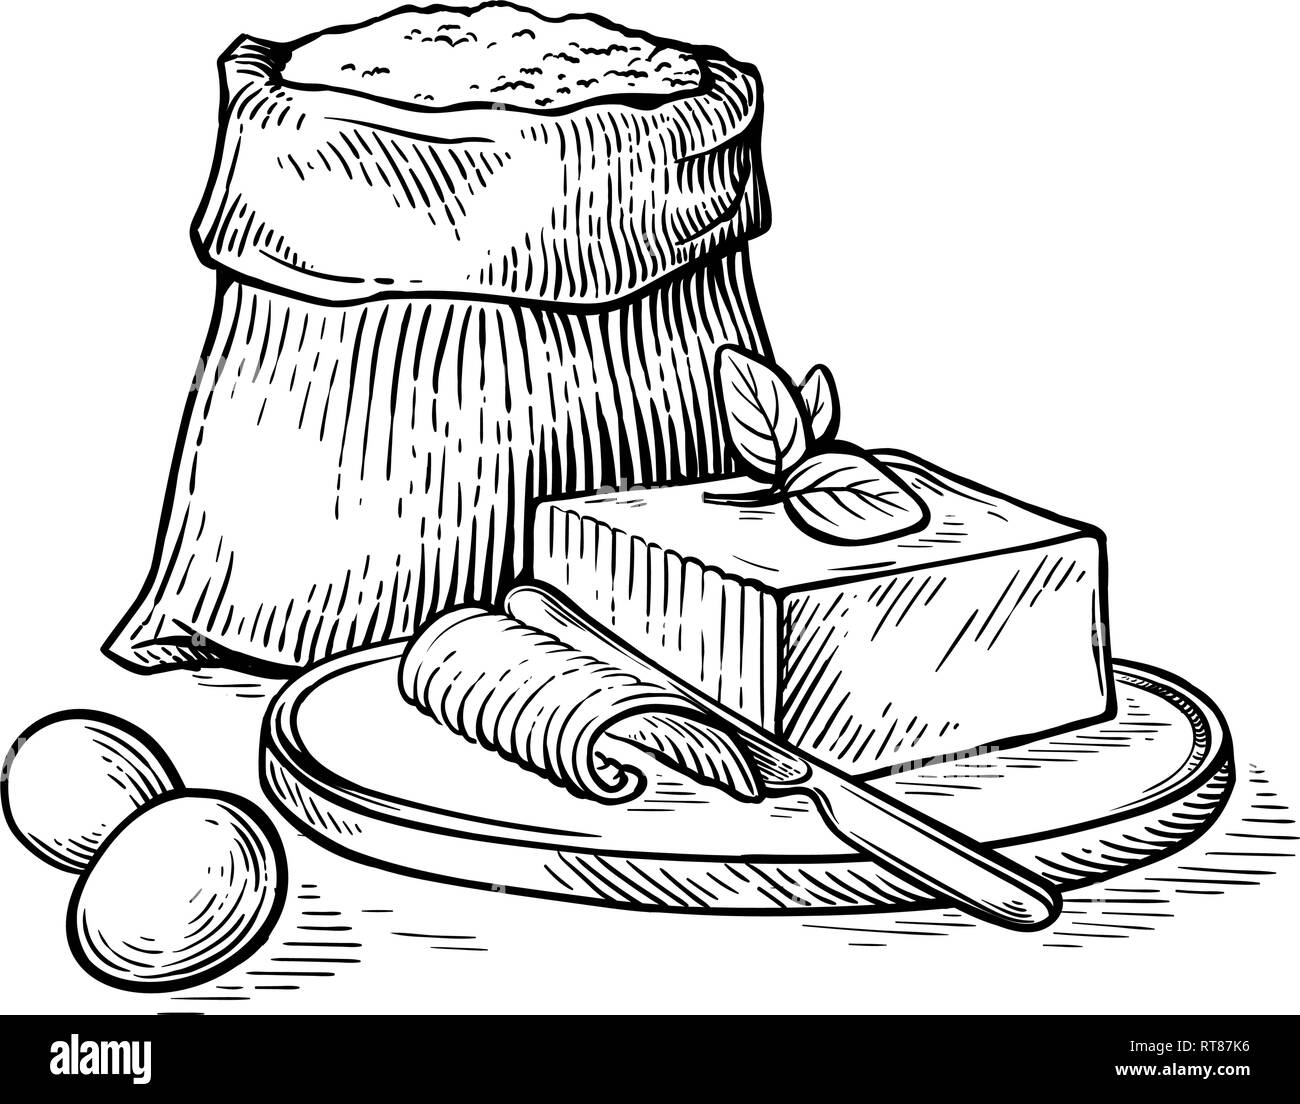 Bozzetto disegnato a mano con sacchi di farina e uova e il burro sulla tavola di legno illustrazione vettoriale Illustrazione Vettoriale